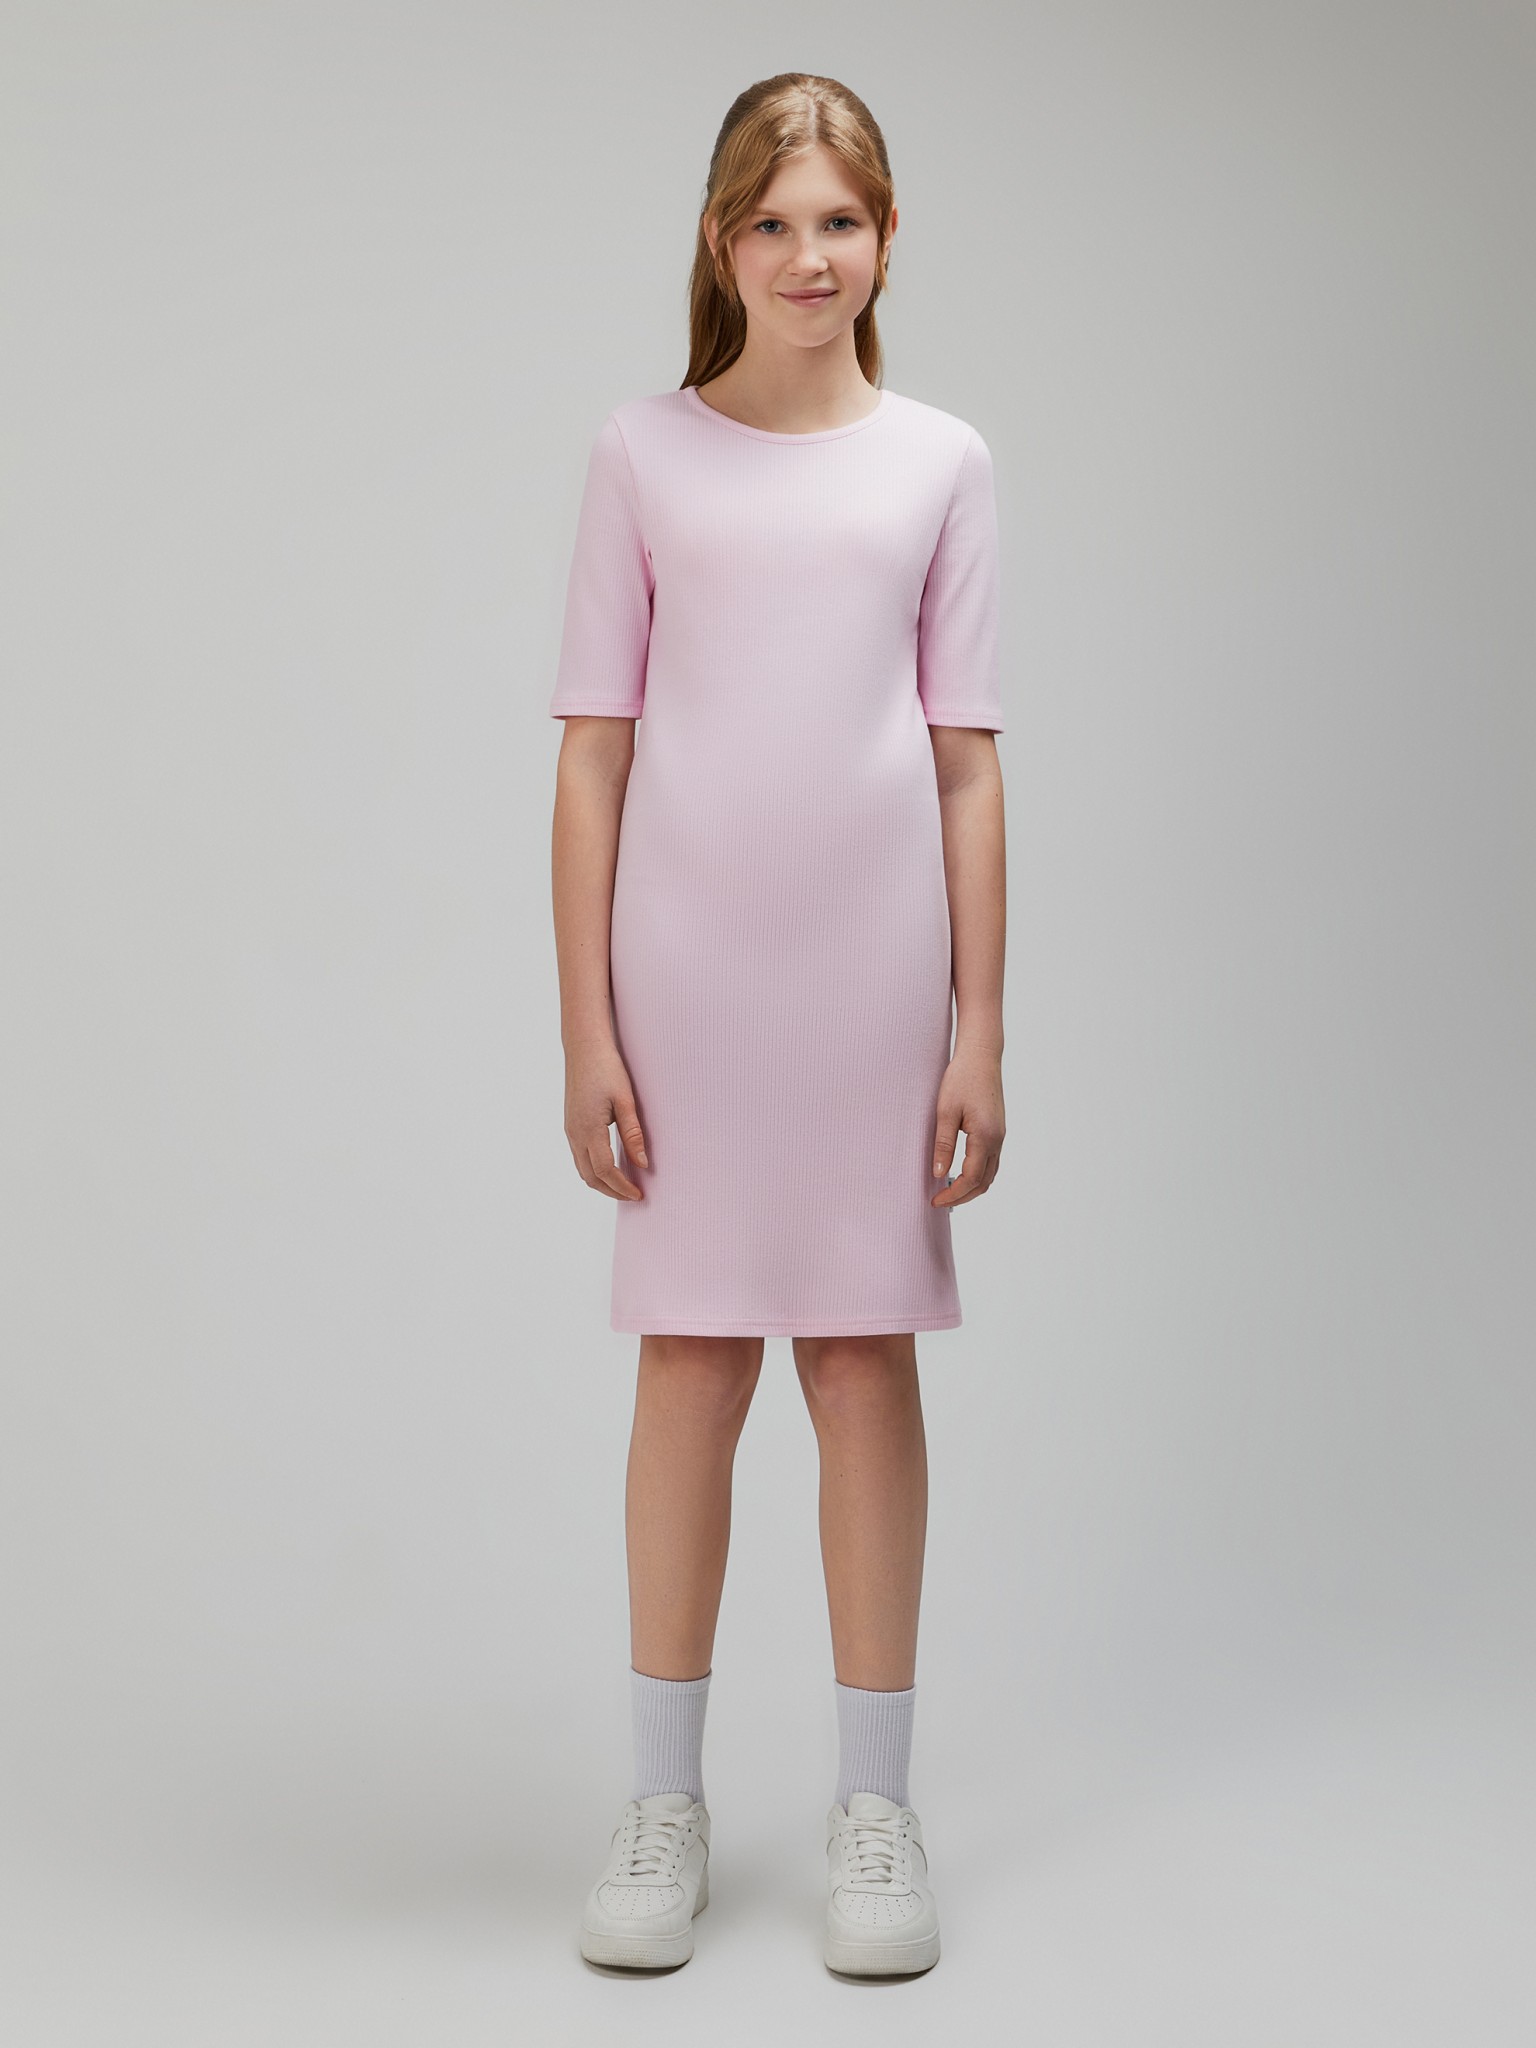 Платье детское Acoola 20240200119, розовый, 164